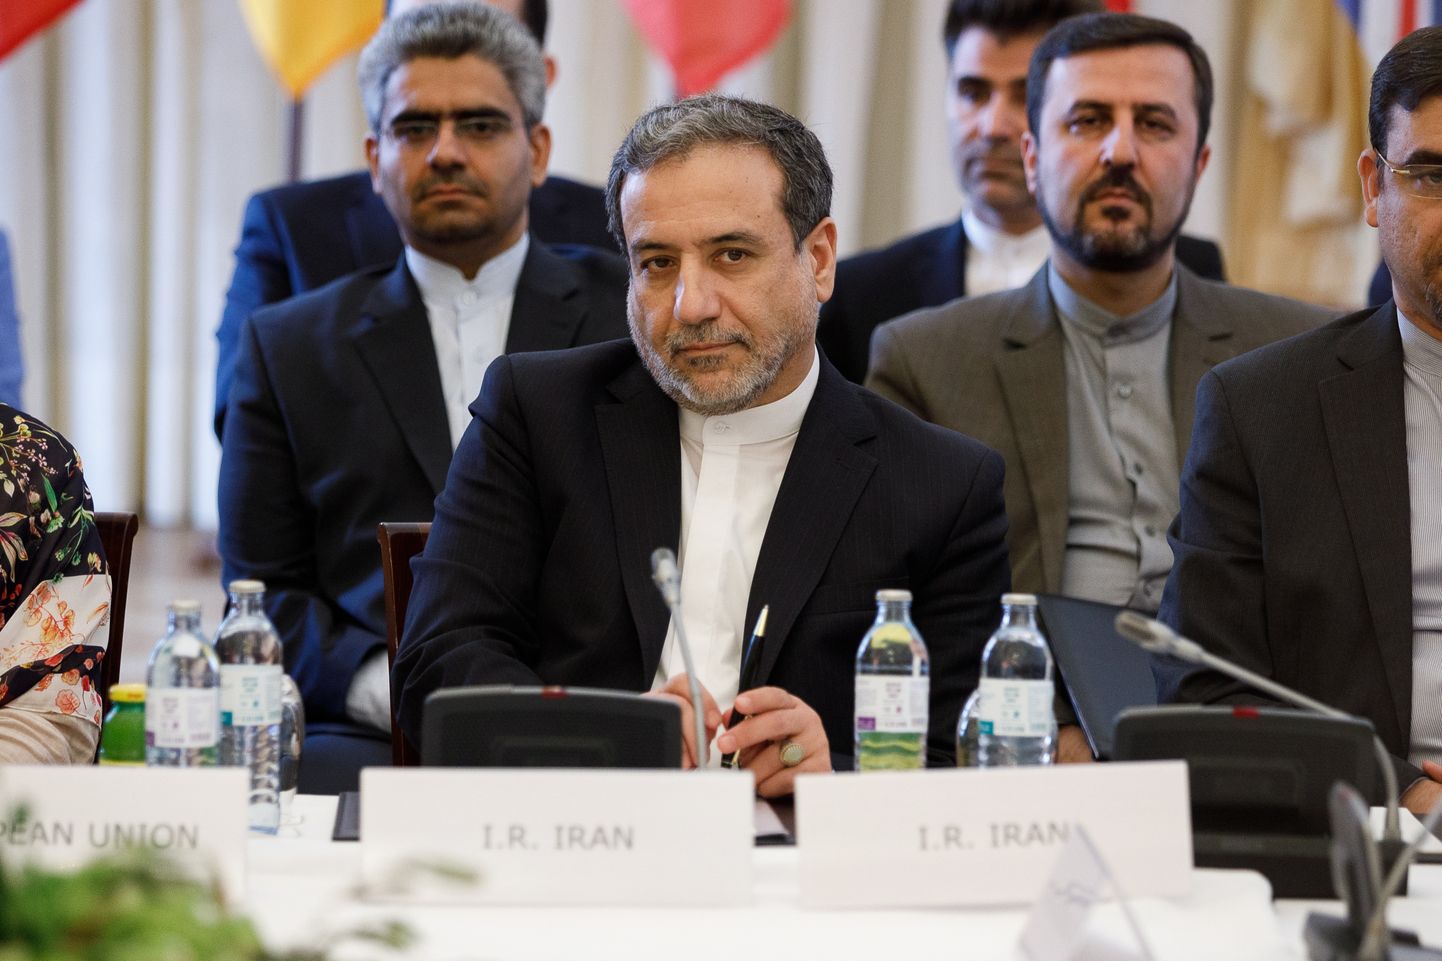 Iraani asevälisminister Abbas Aragchi pühapäeval Viinis Iraani tuumaleppe (JCPOA) ühiskomisjoni istungil.